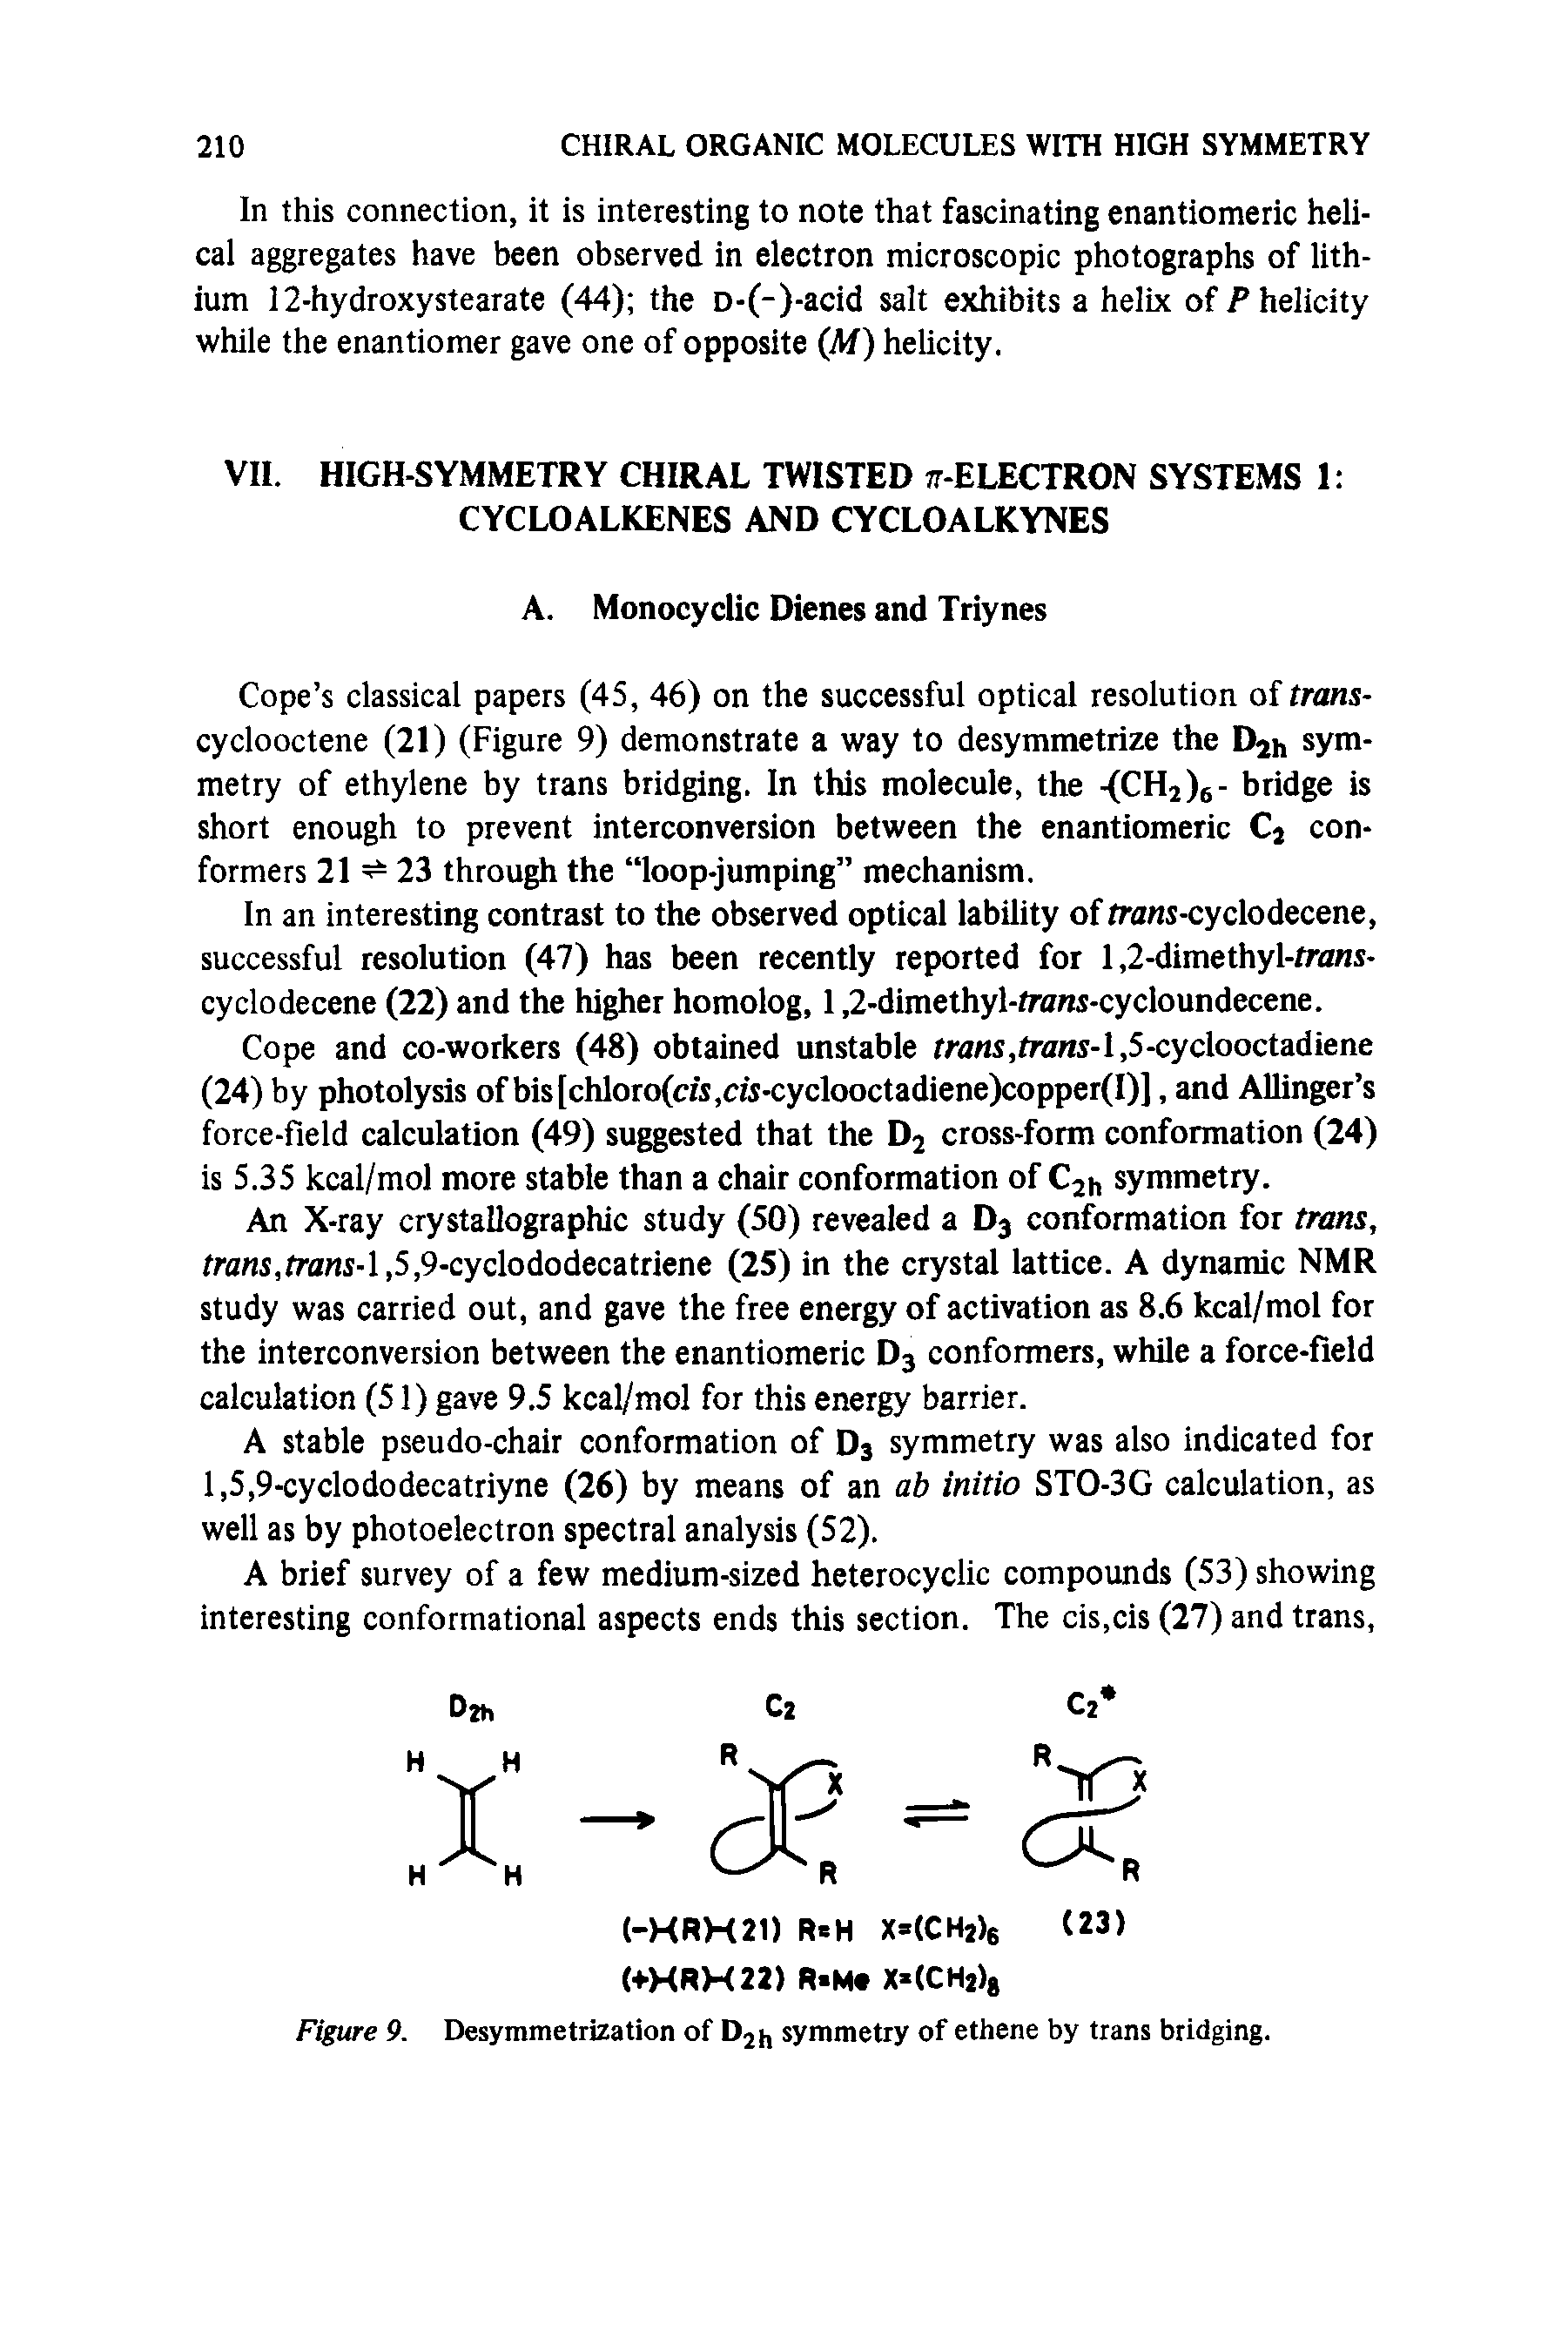 Figure 9. Desymmetrization of D2j, symmetry of ethene by trans bridging.